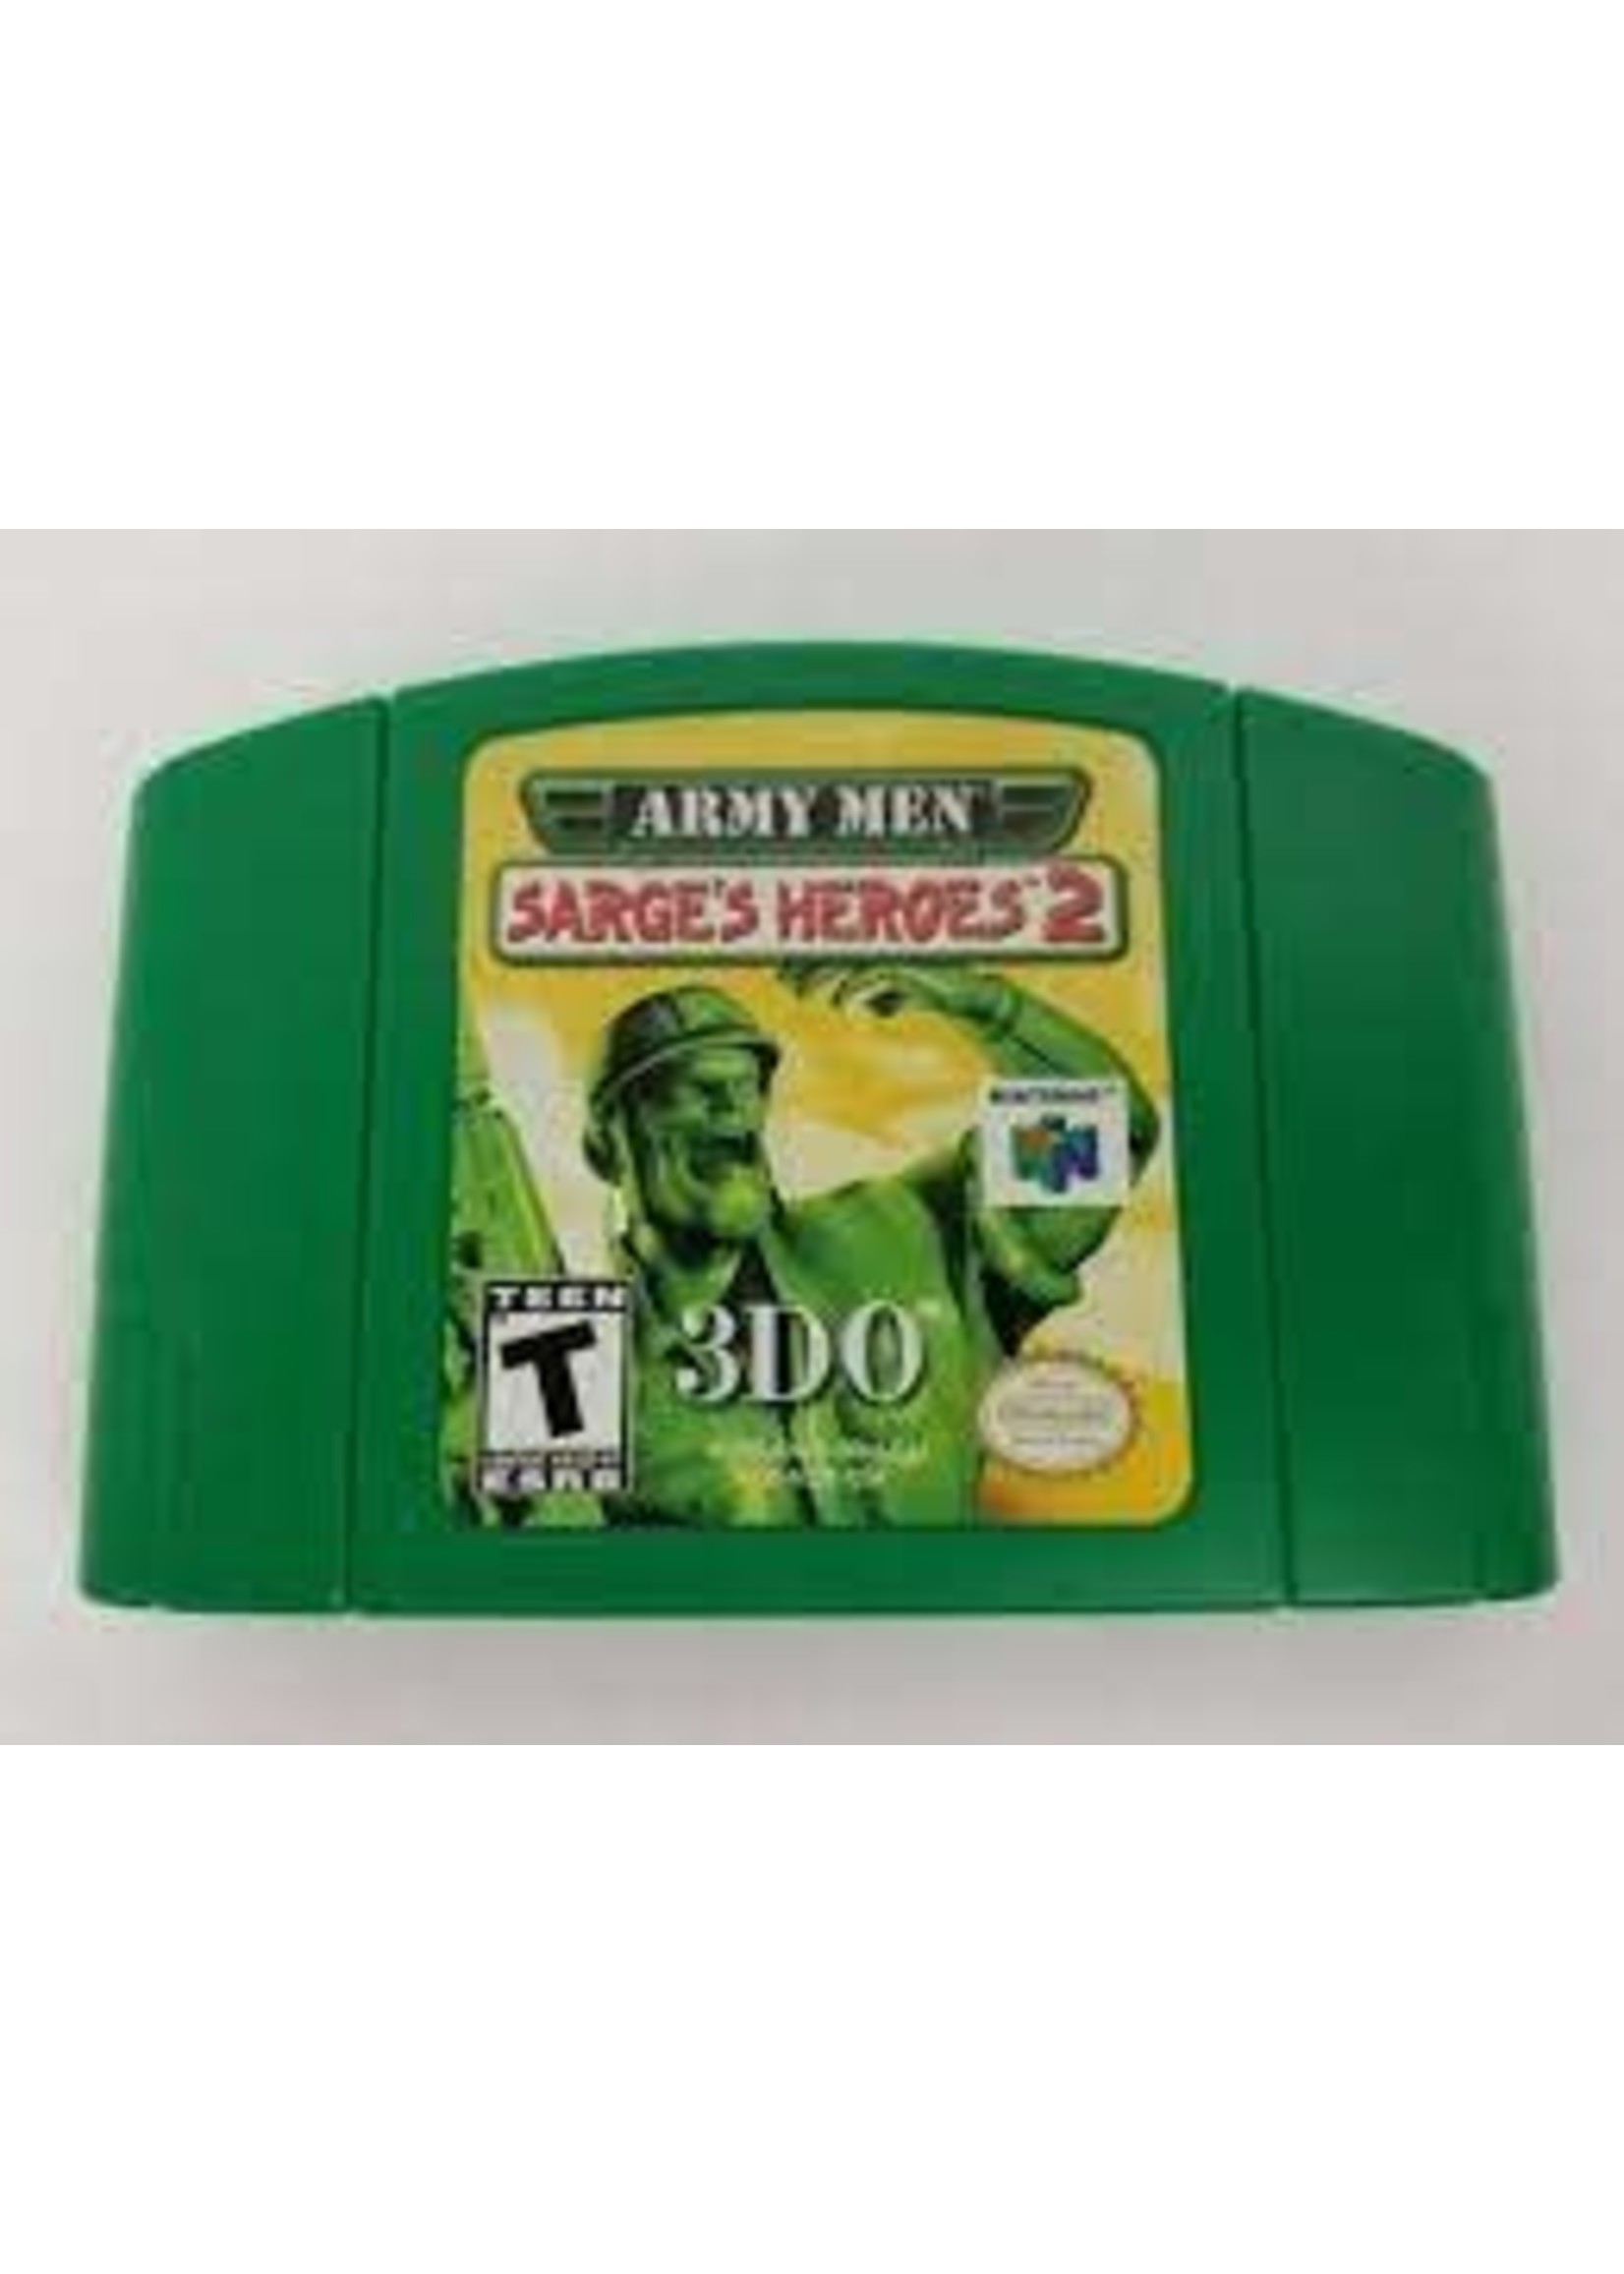 Nintendo 64 (N64) Army Men Sarge's Heroes 2